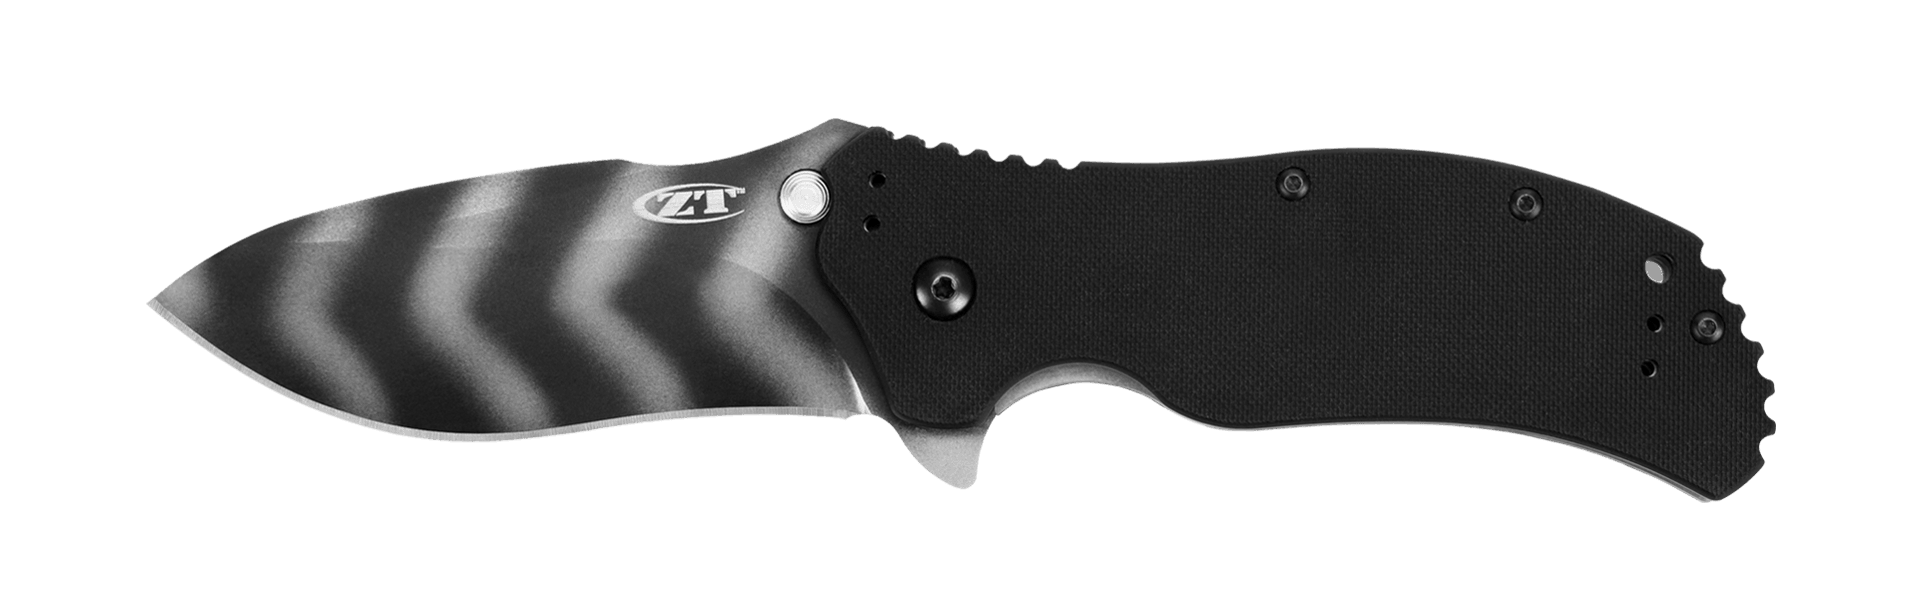 Zero Tolerance Linerlock A/O Black G10 Tiger Stripe Coated CPM S30V - Knives.mx